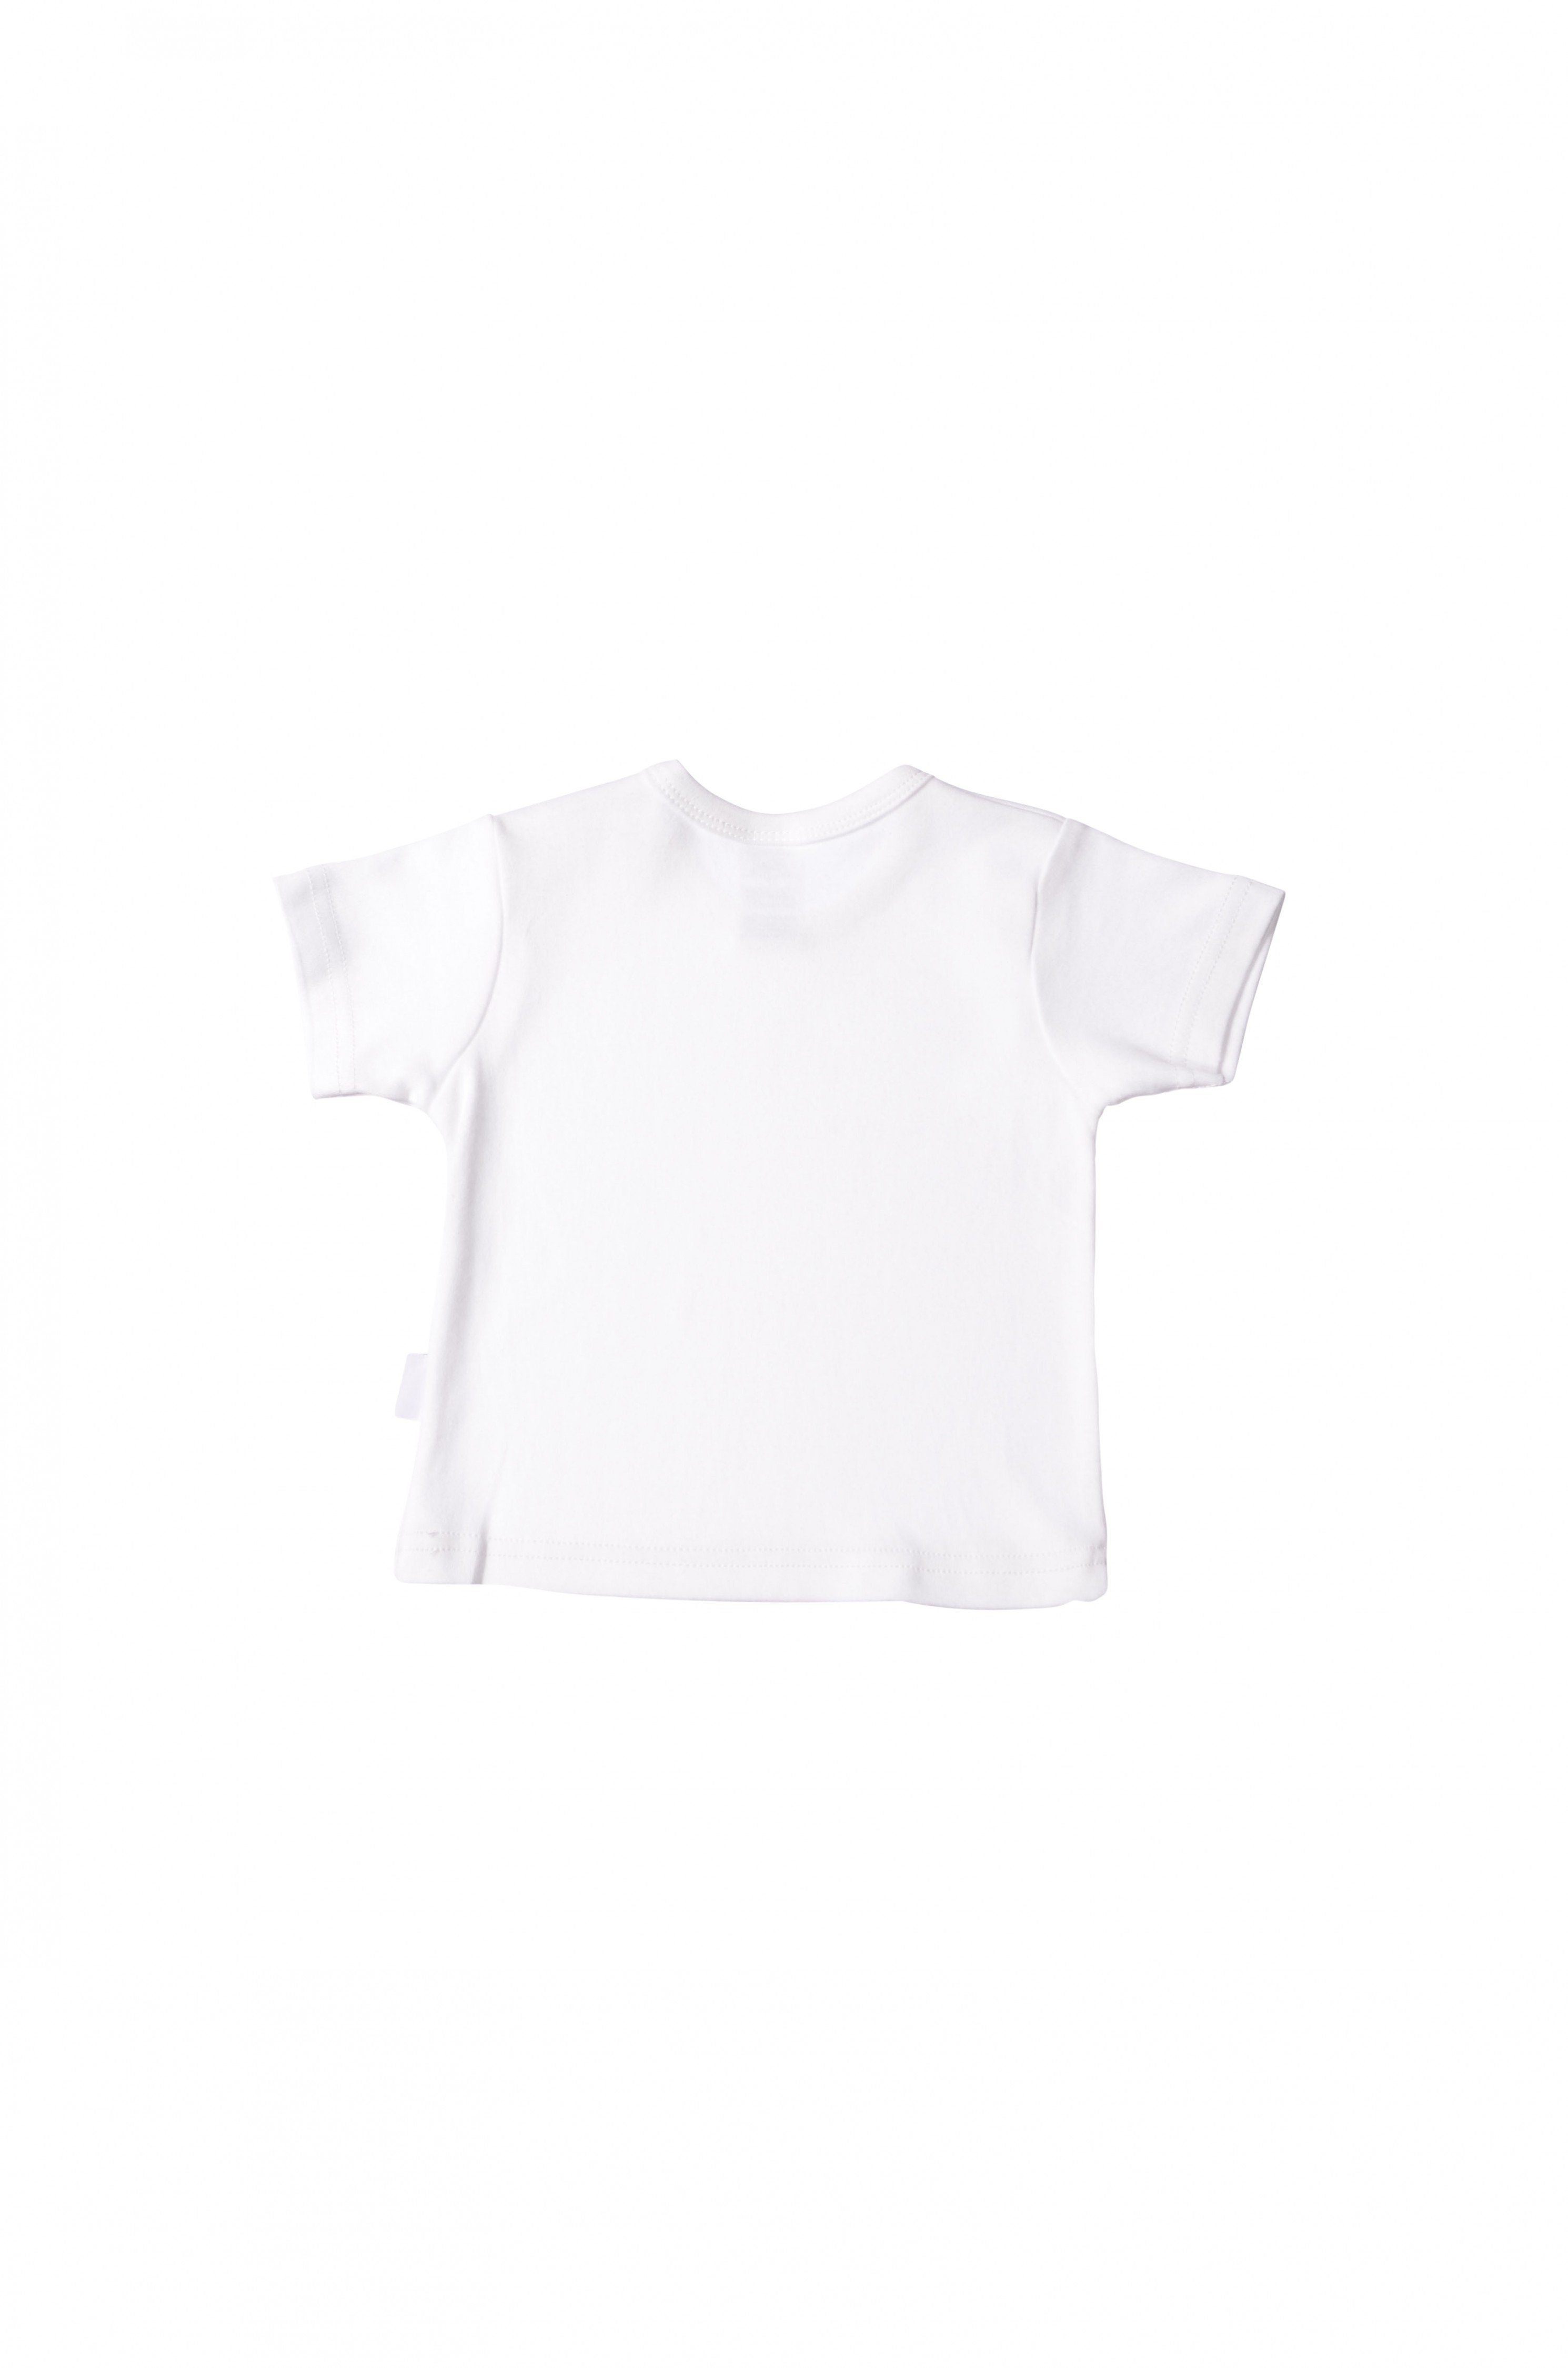 Liliput T-Shirt mit Druckknöpfen weiß